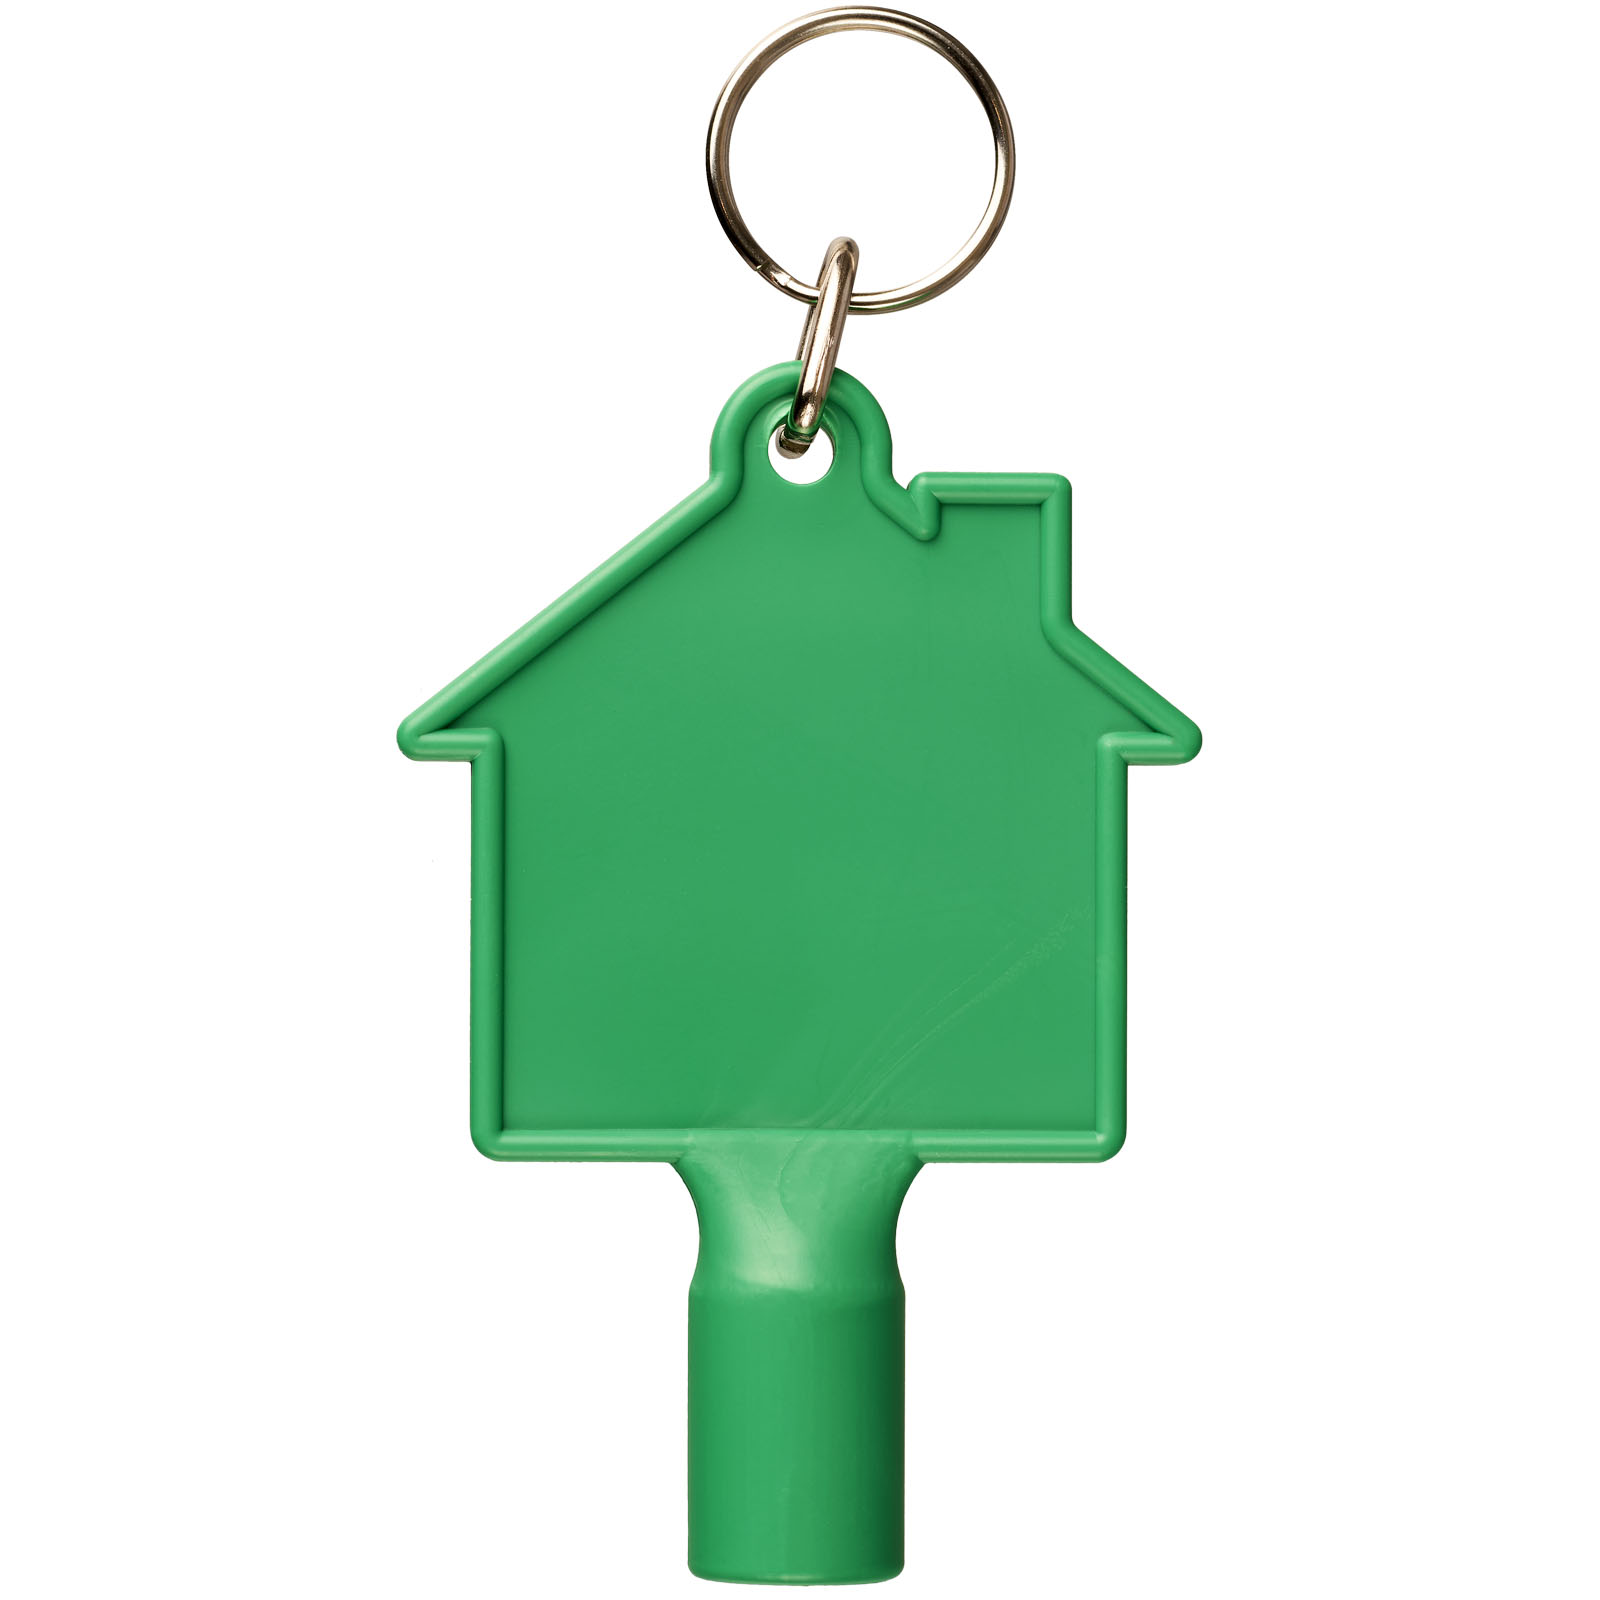 Porte-clés publicitaires - Clé utilitaire Maximilian en forme de maison avec porte-clés  - 1